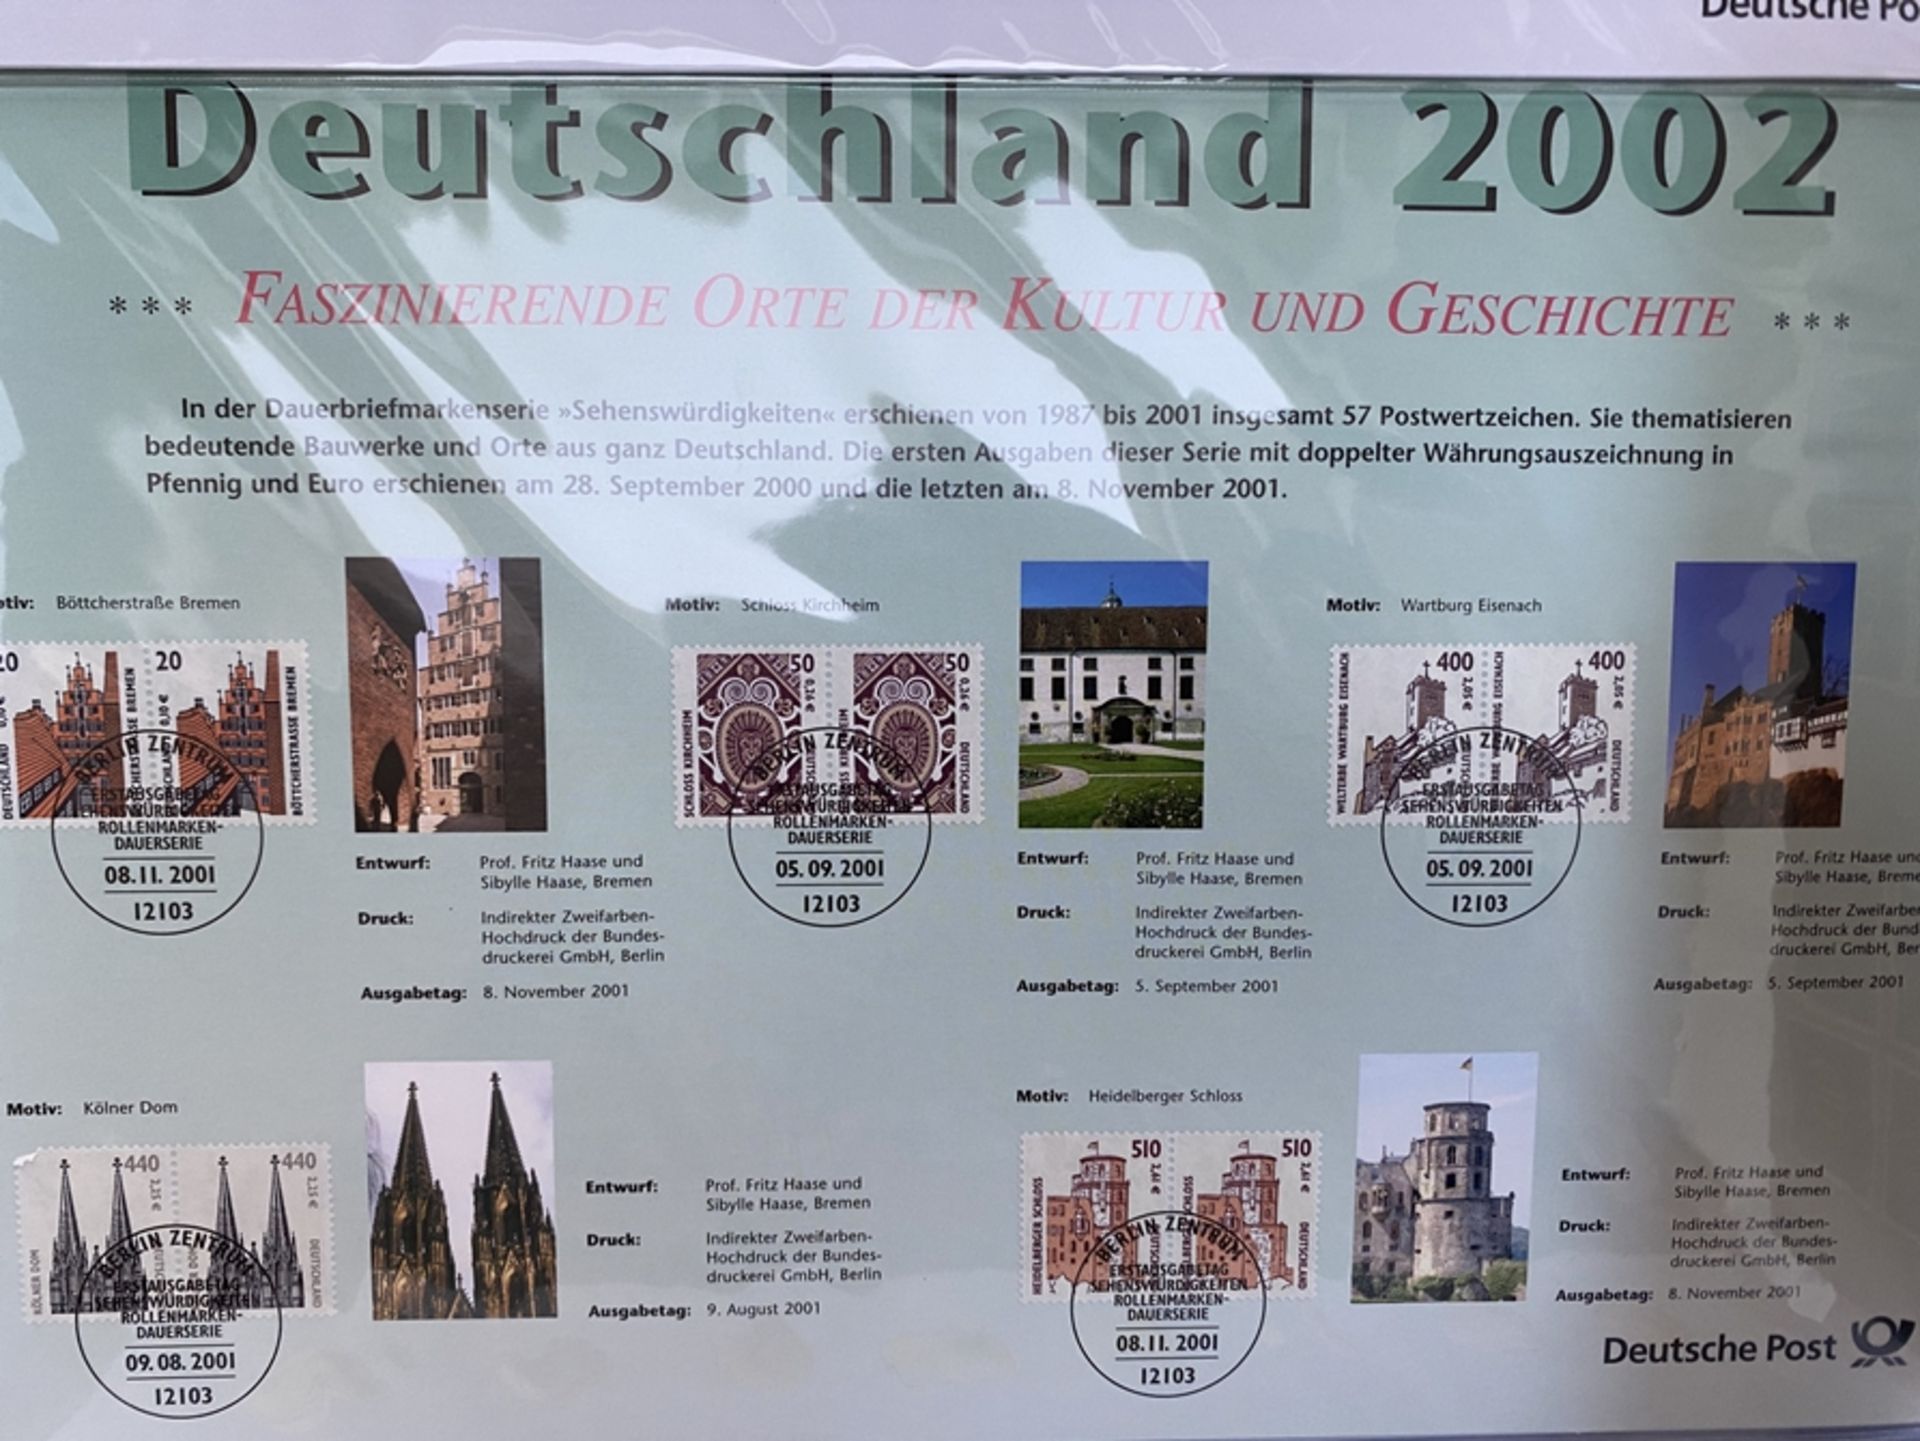 Deutschland 2002, Mappe mit Münzsatz und Briefmarken - Image 3 of 4